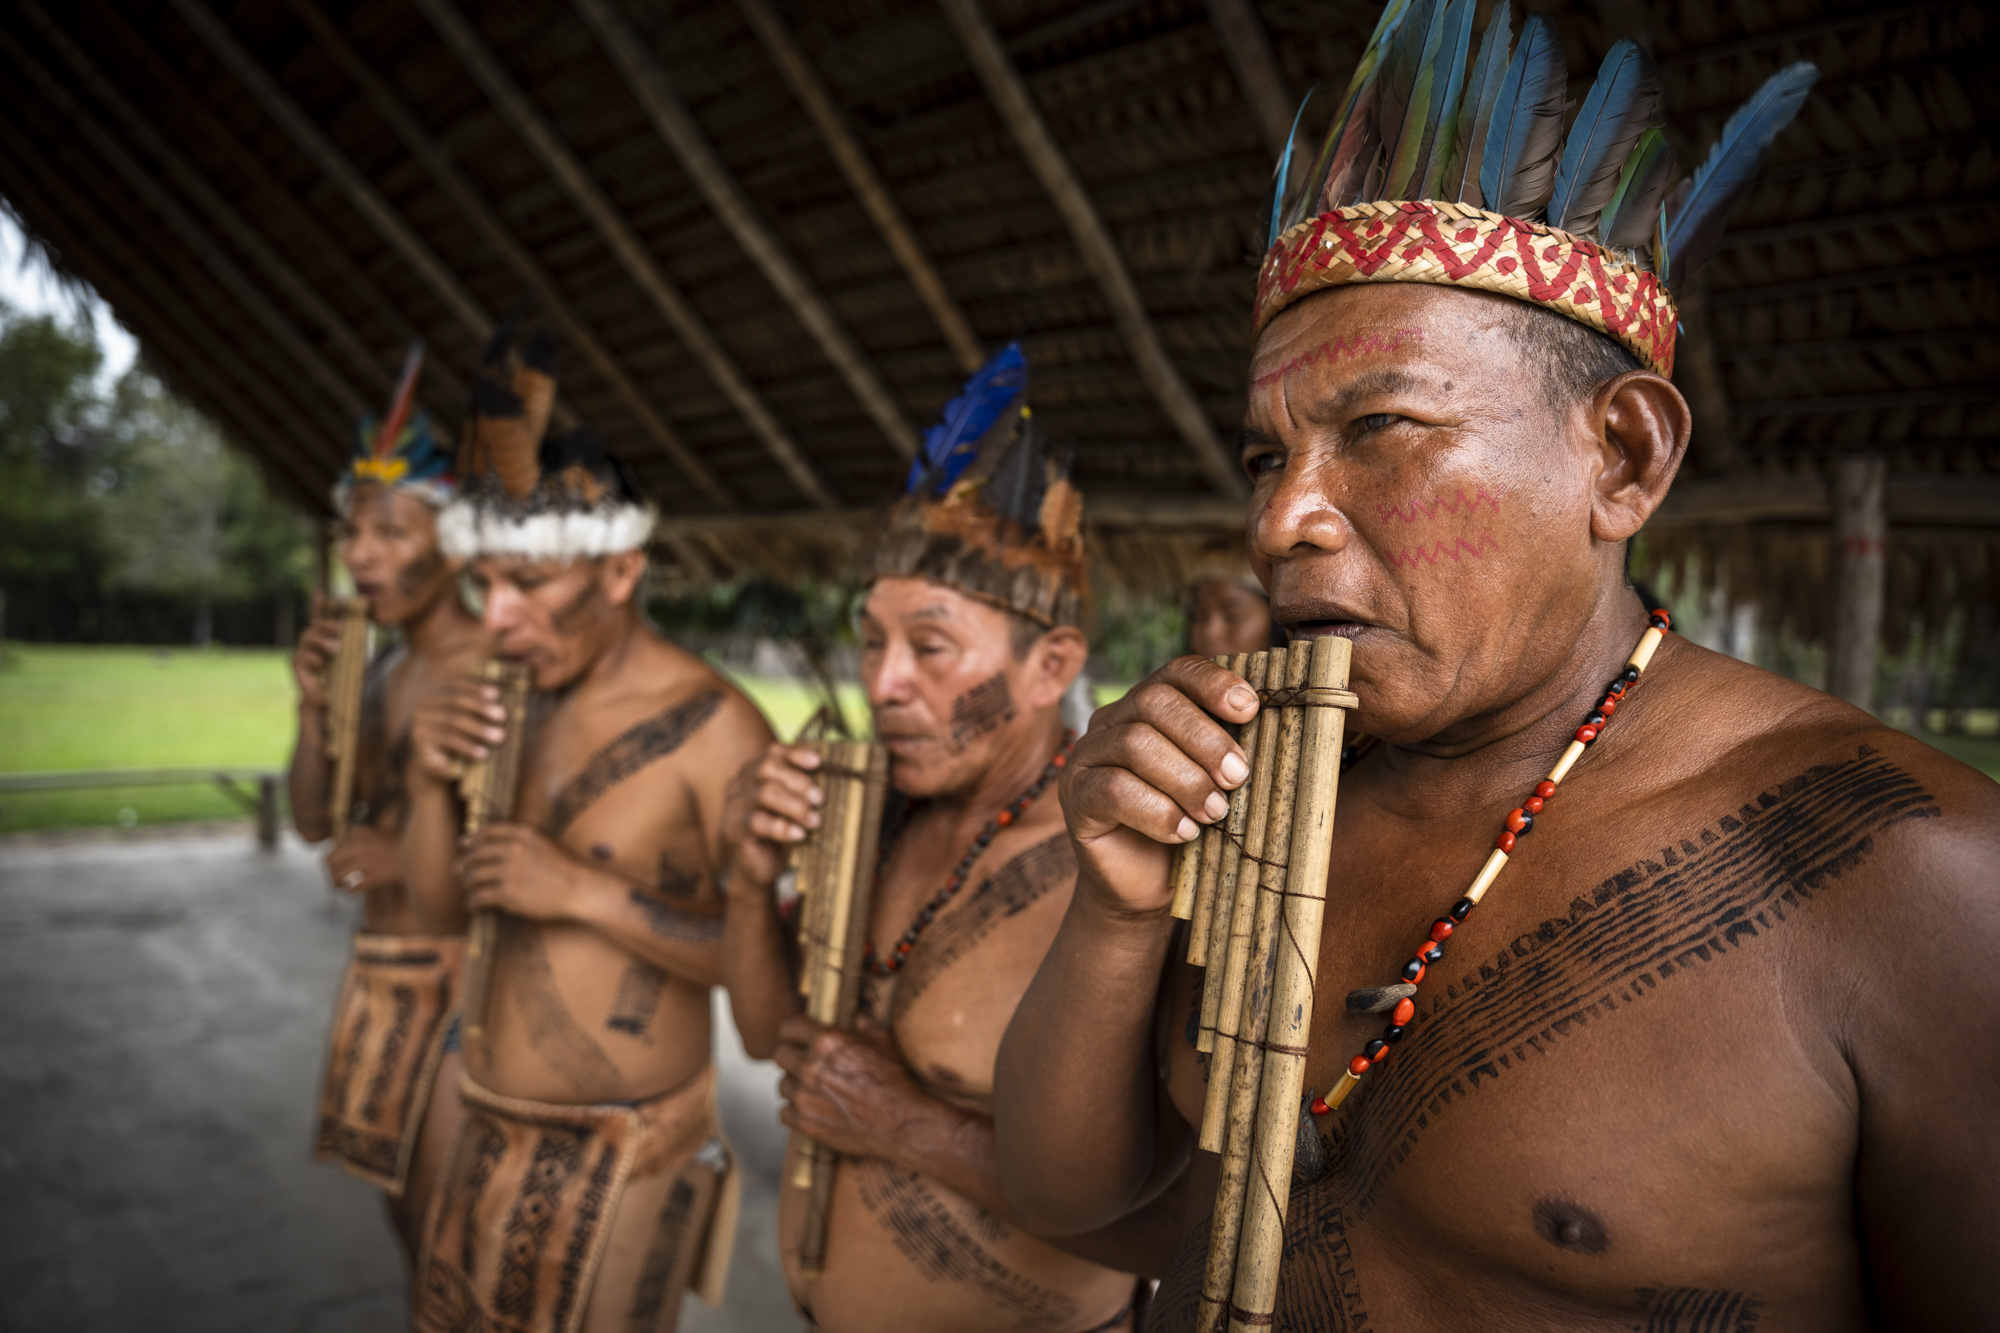 Población indígena colombiana tocando instrumentos tradicionales de nuestros pueblos originarios.